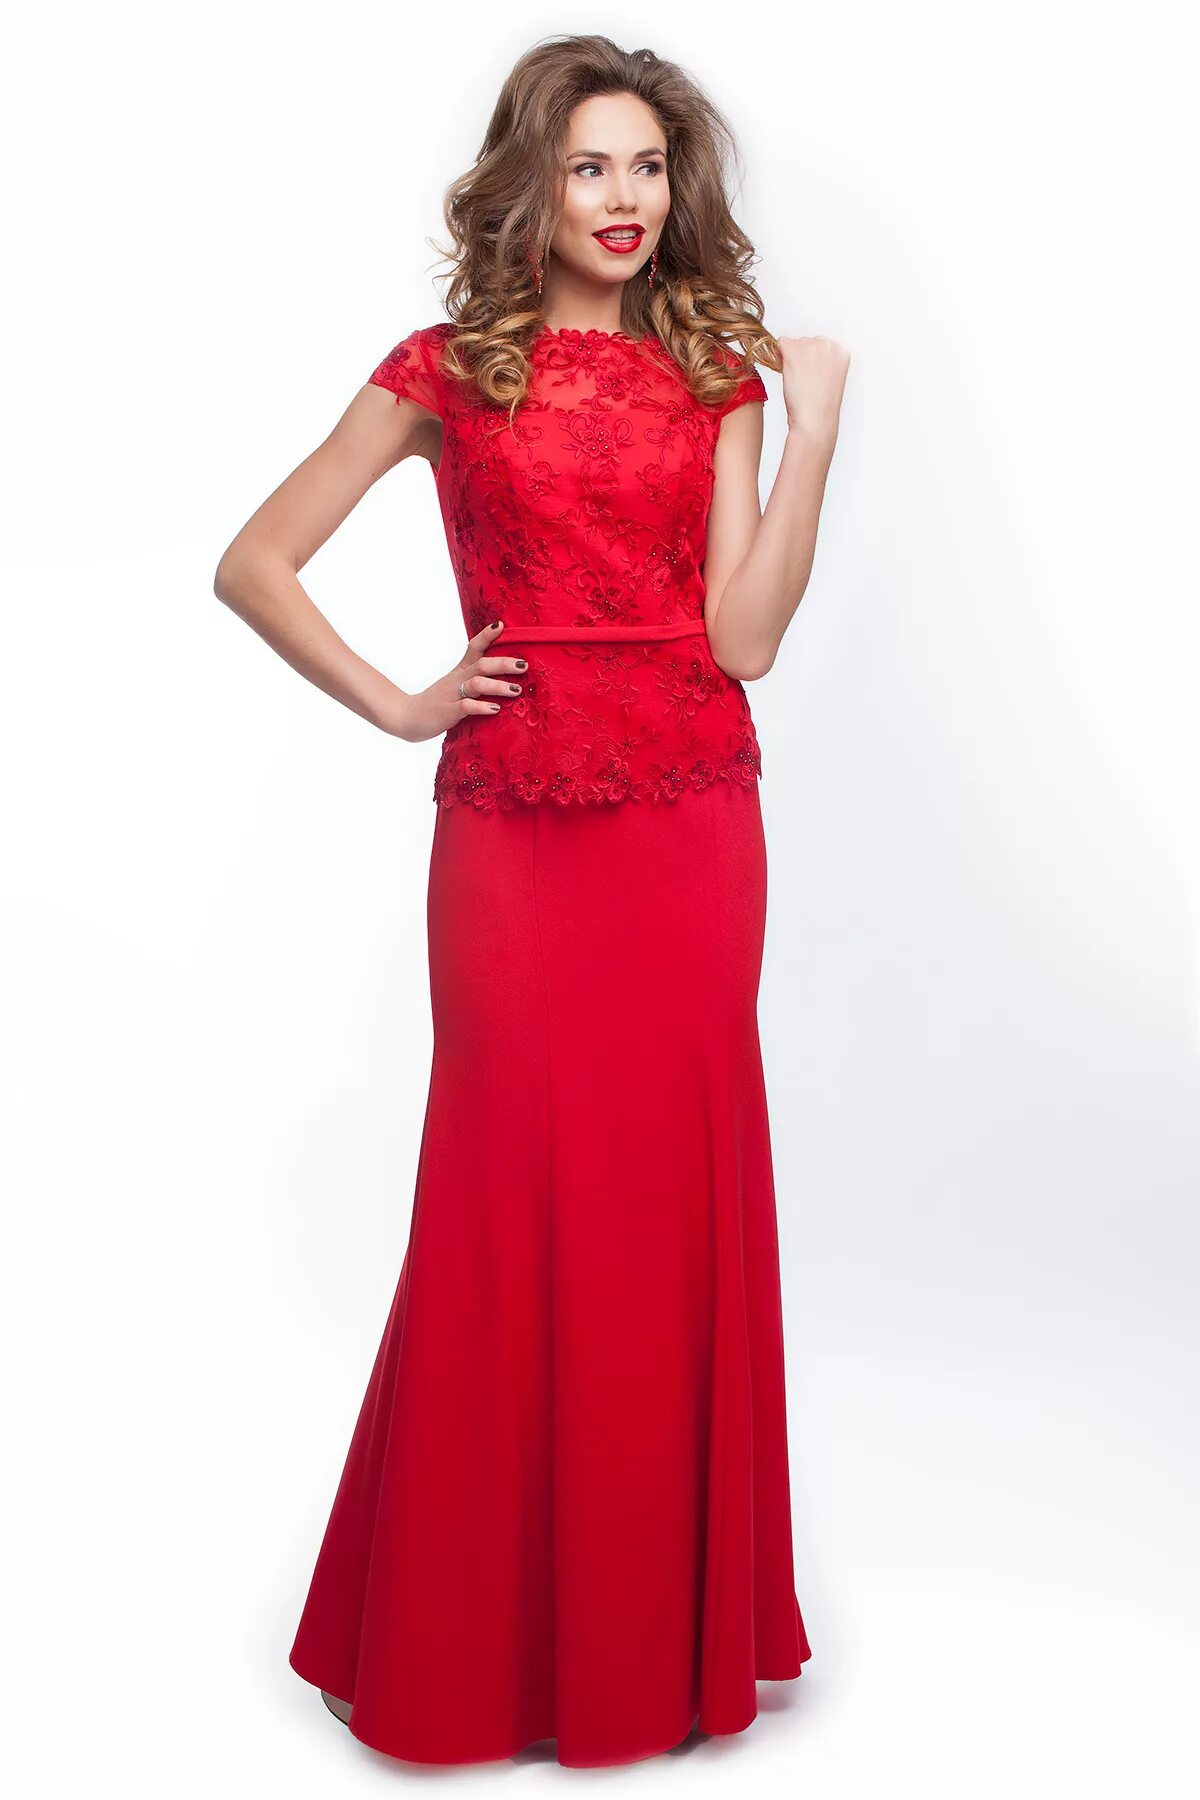 Вечернее платье. Красное платье. Красивое красное платье. Красивые вечерние платья. Красивые платья недорого интернет магазин